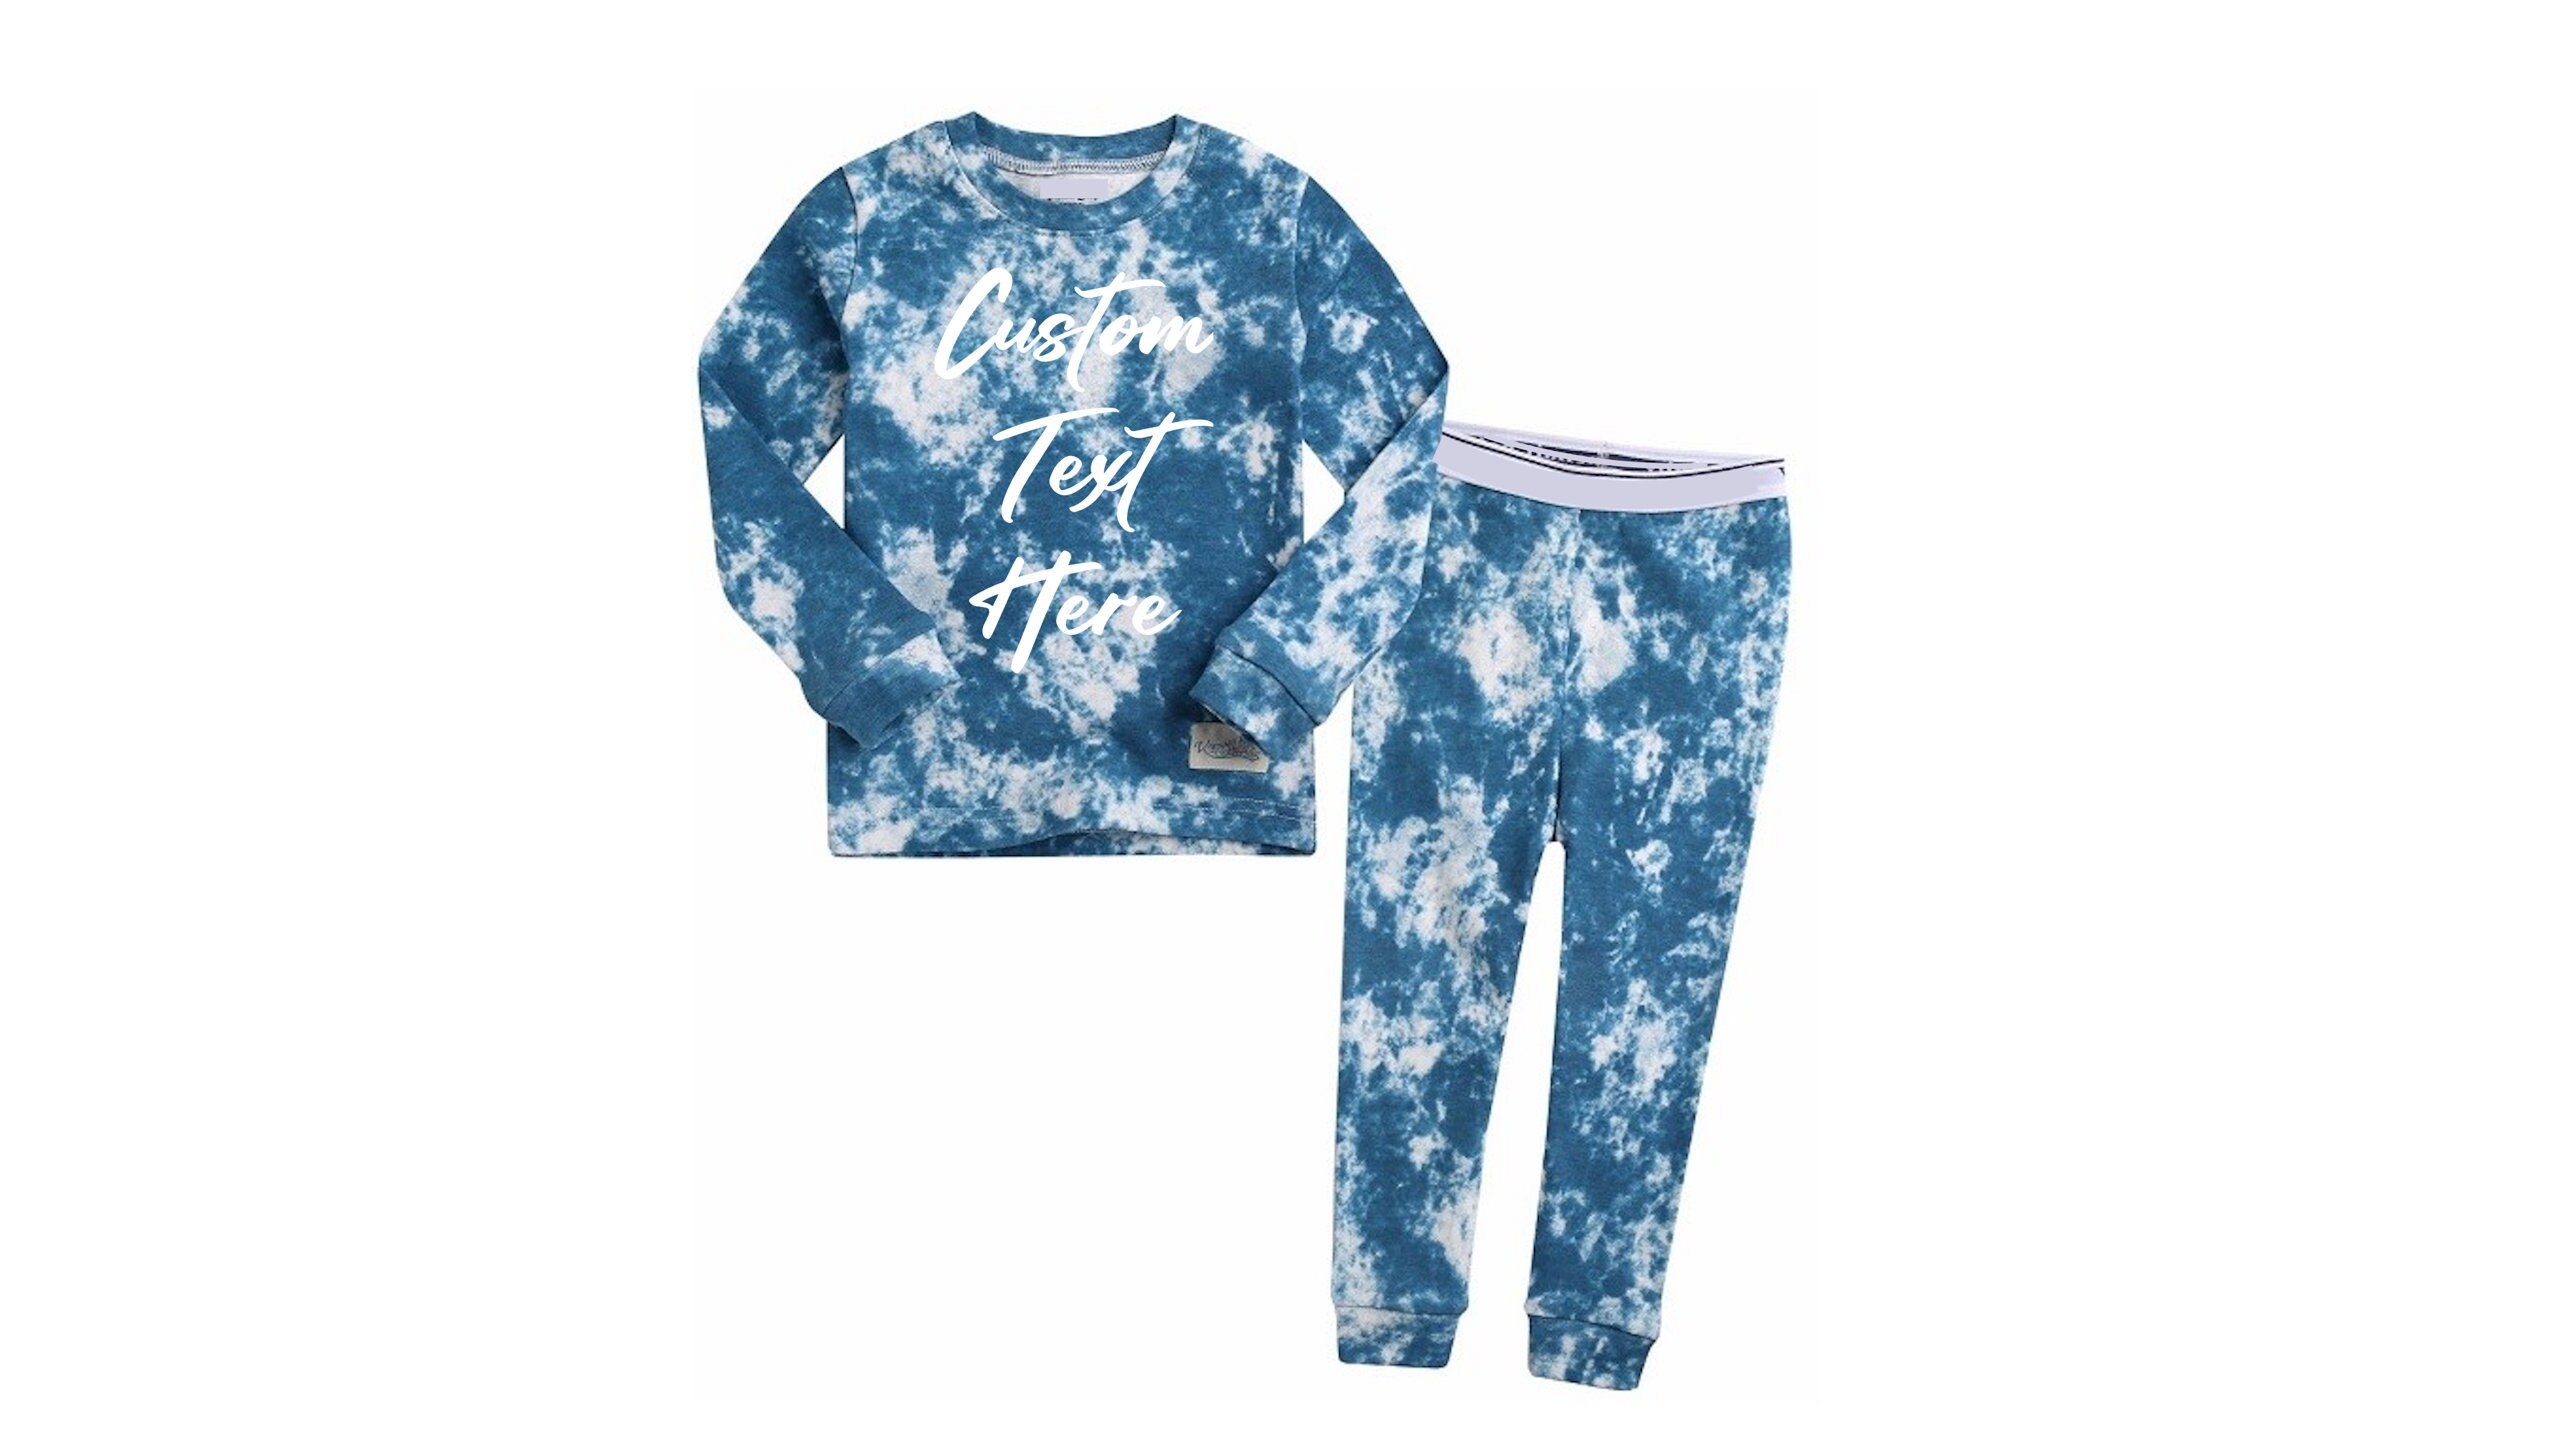 Kids Pjs Pajamas Set Baby Allie & Oliver 100% Cotton Snug Fit Unisex Toddler 